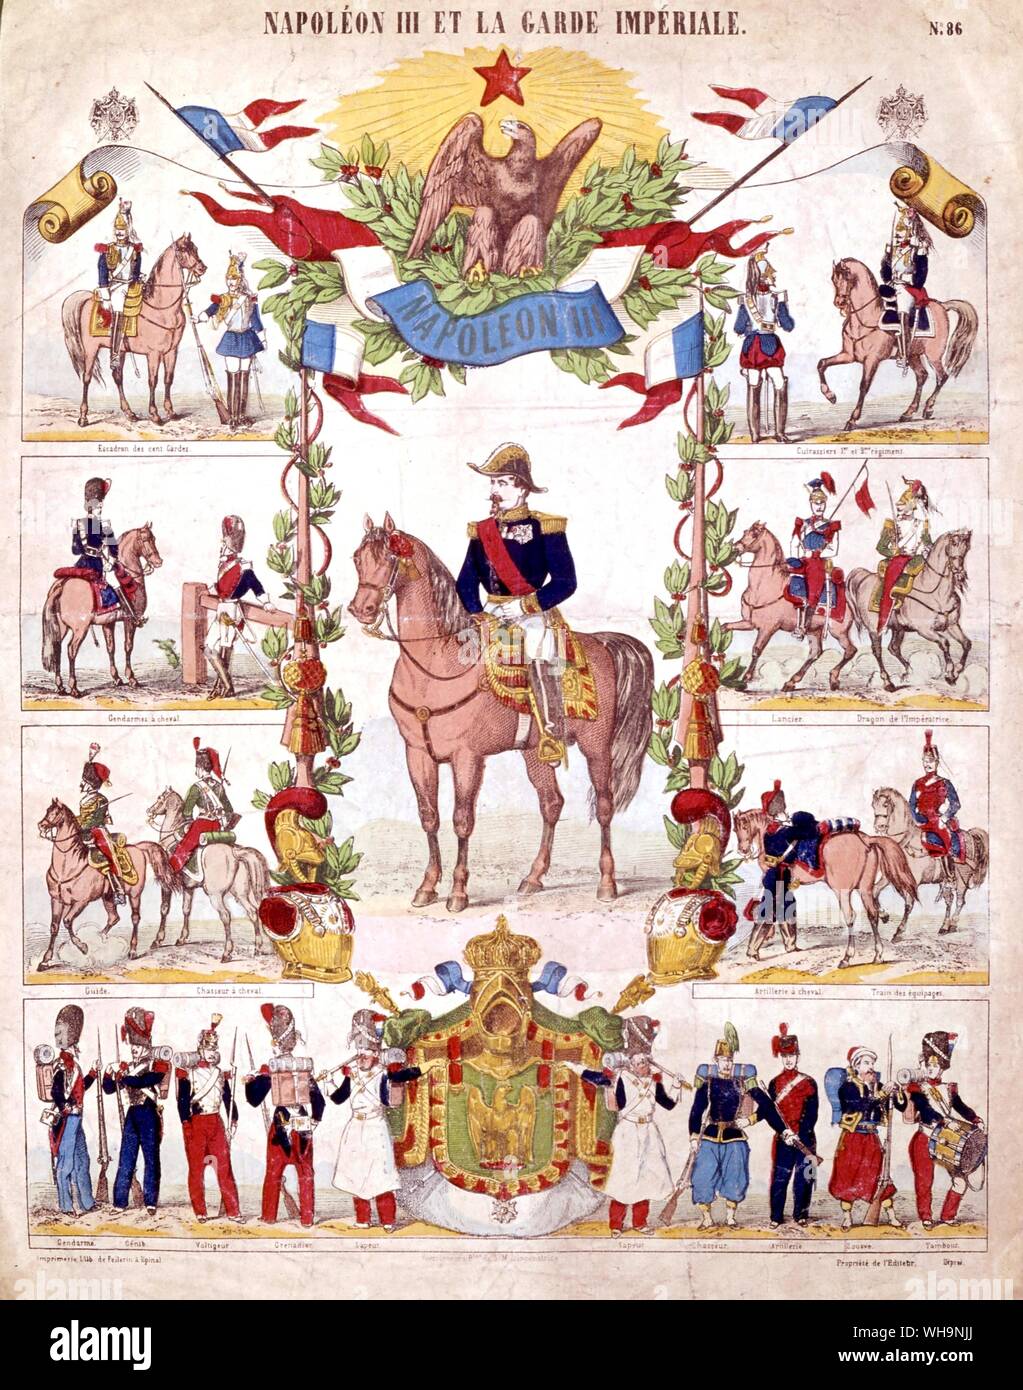 Napoleon III et la Garde Imperiale Stock Photo